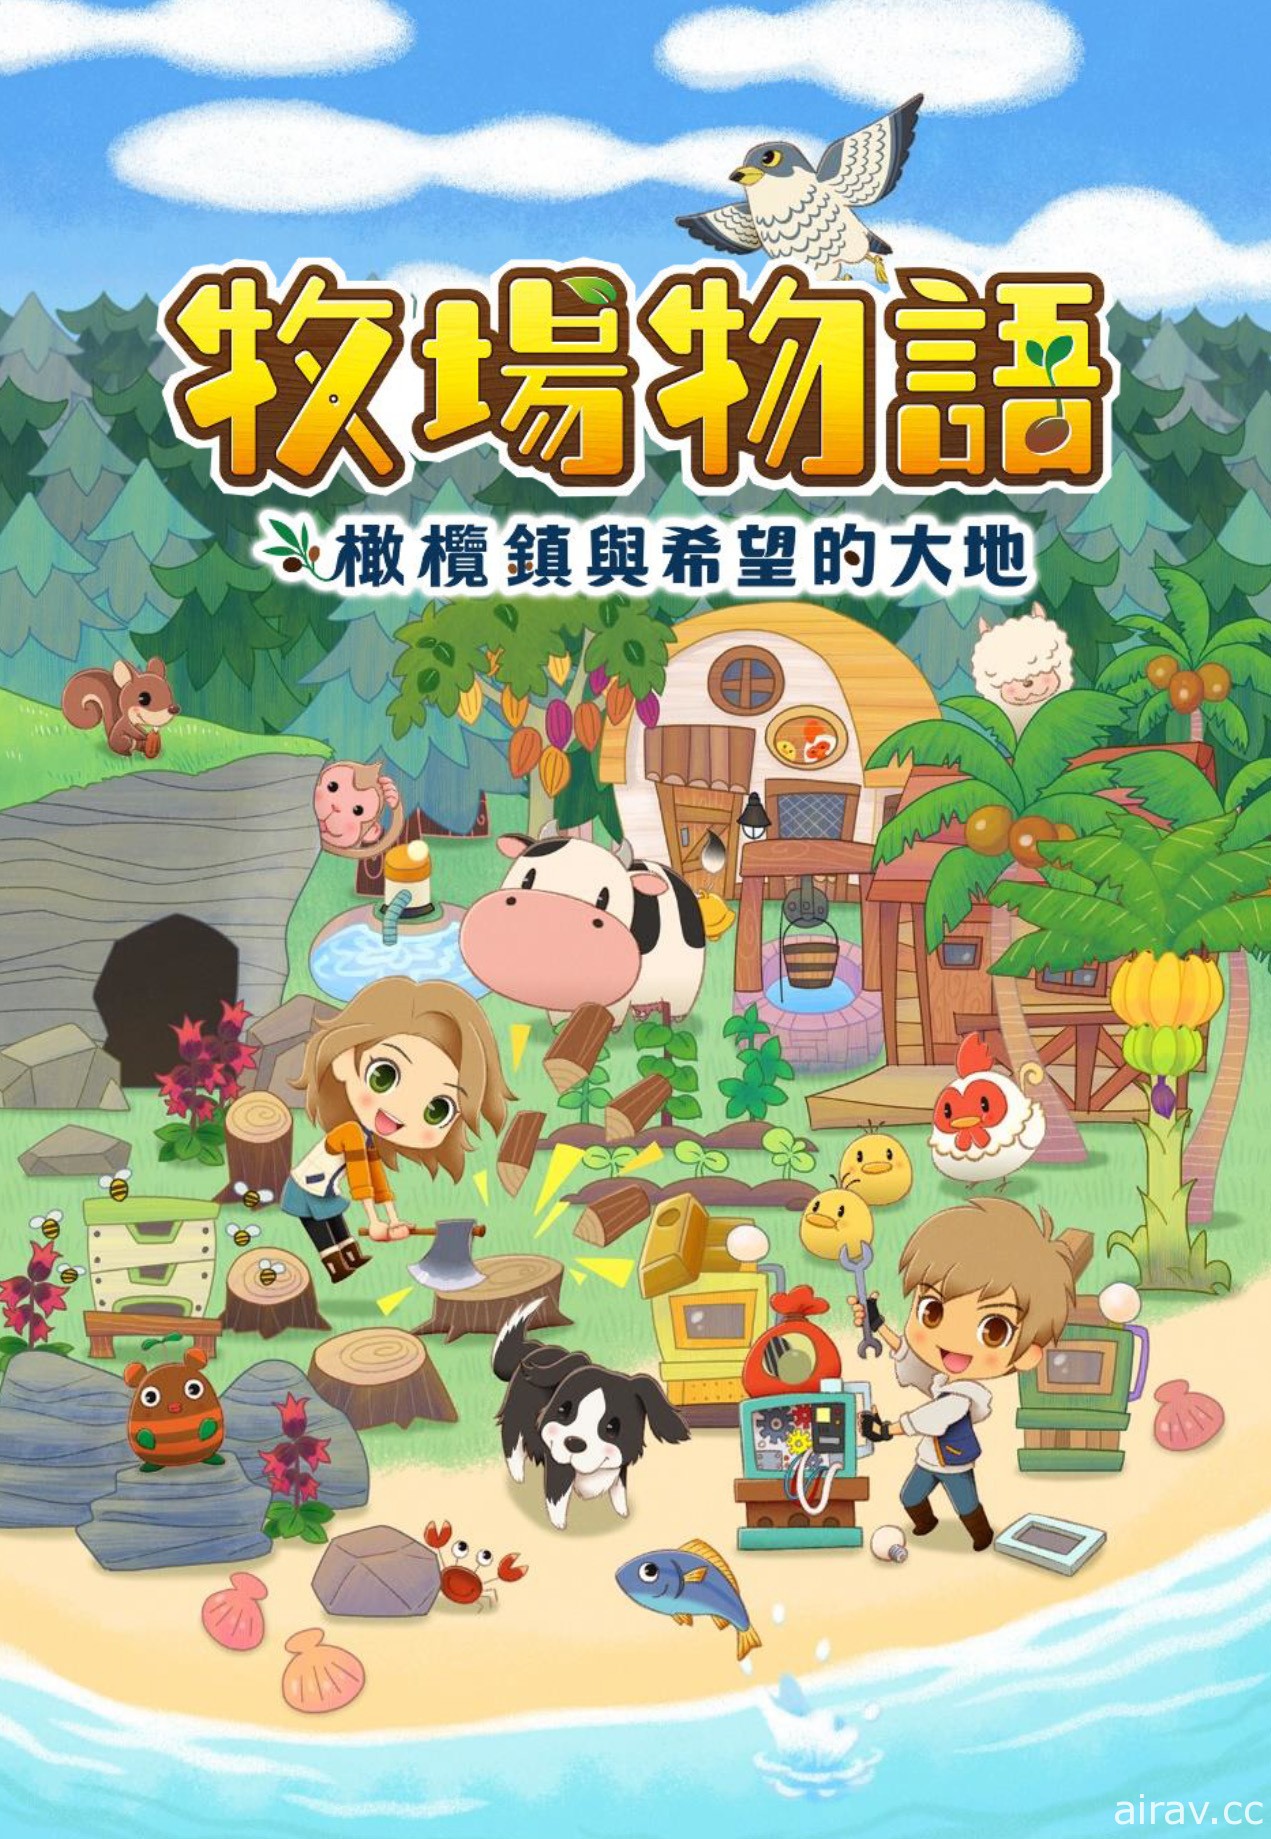 《牧场物语》系列首款 Switch 新作《橄榄镇与希望的大地》中文版将同步发售